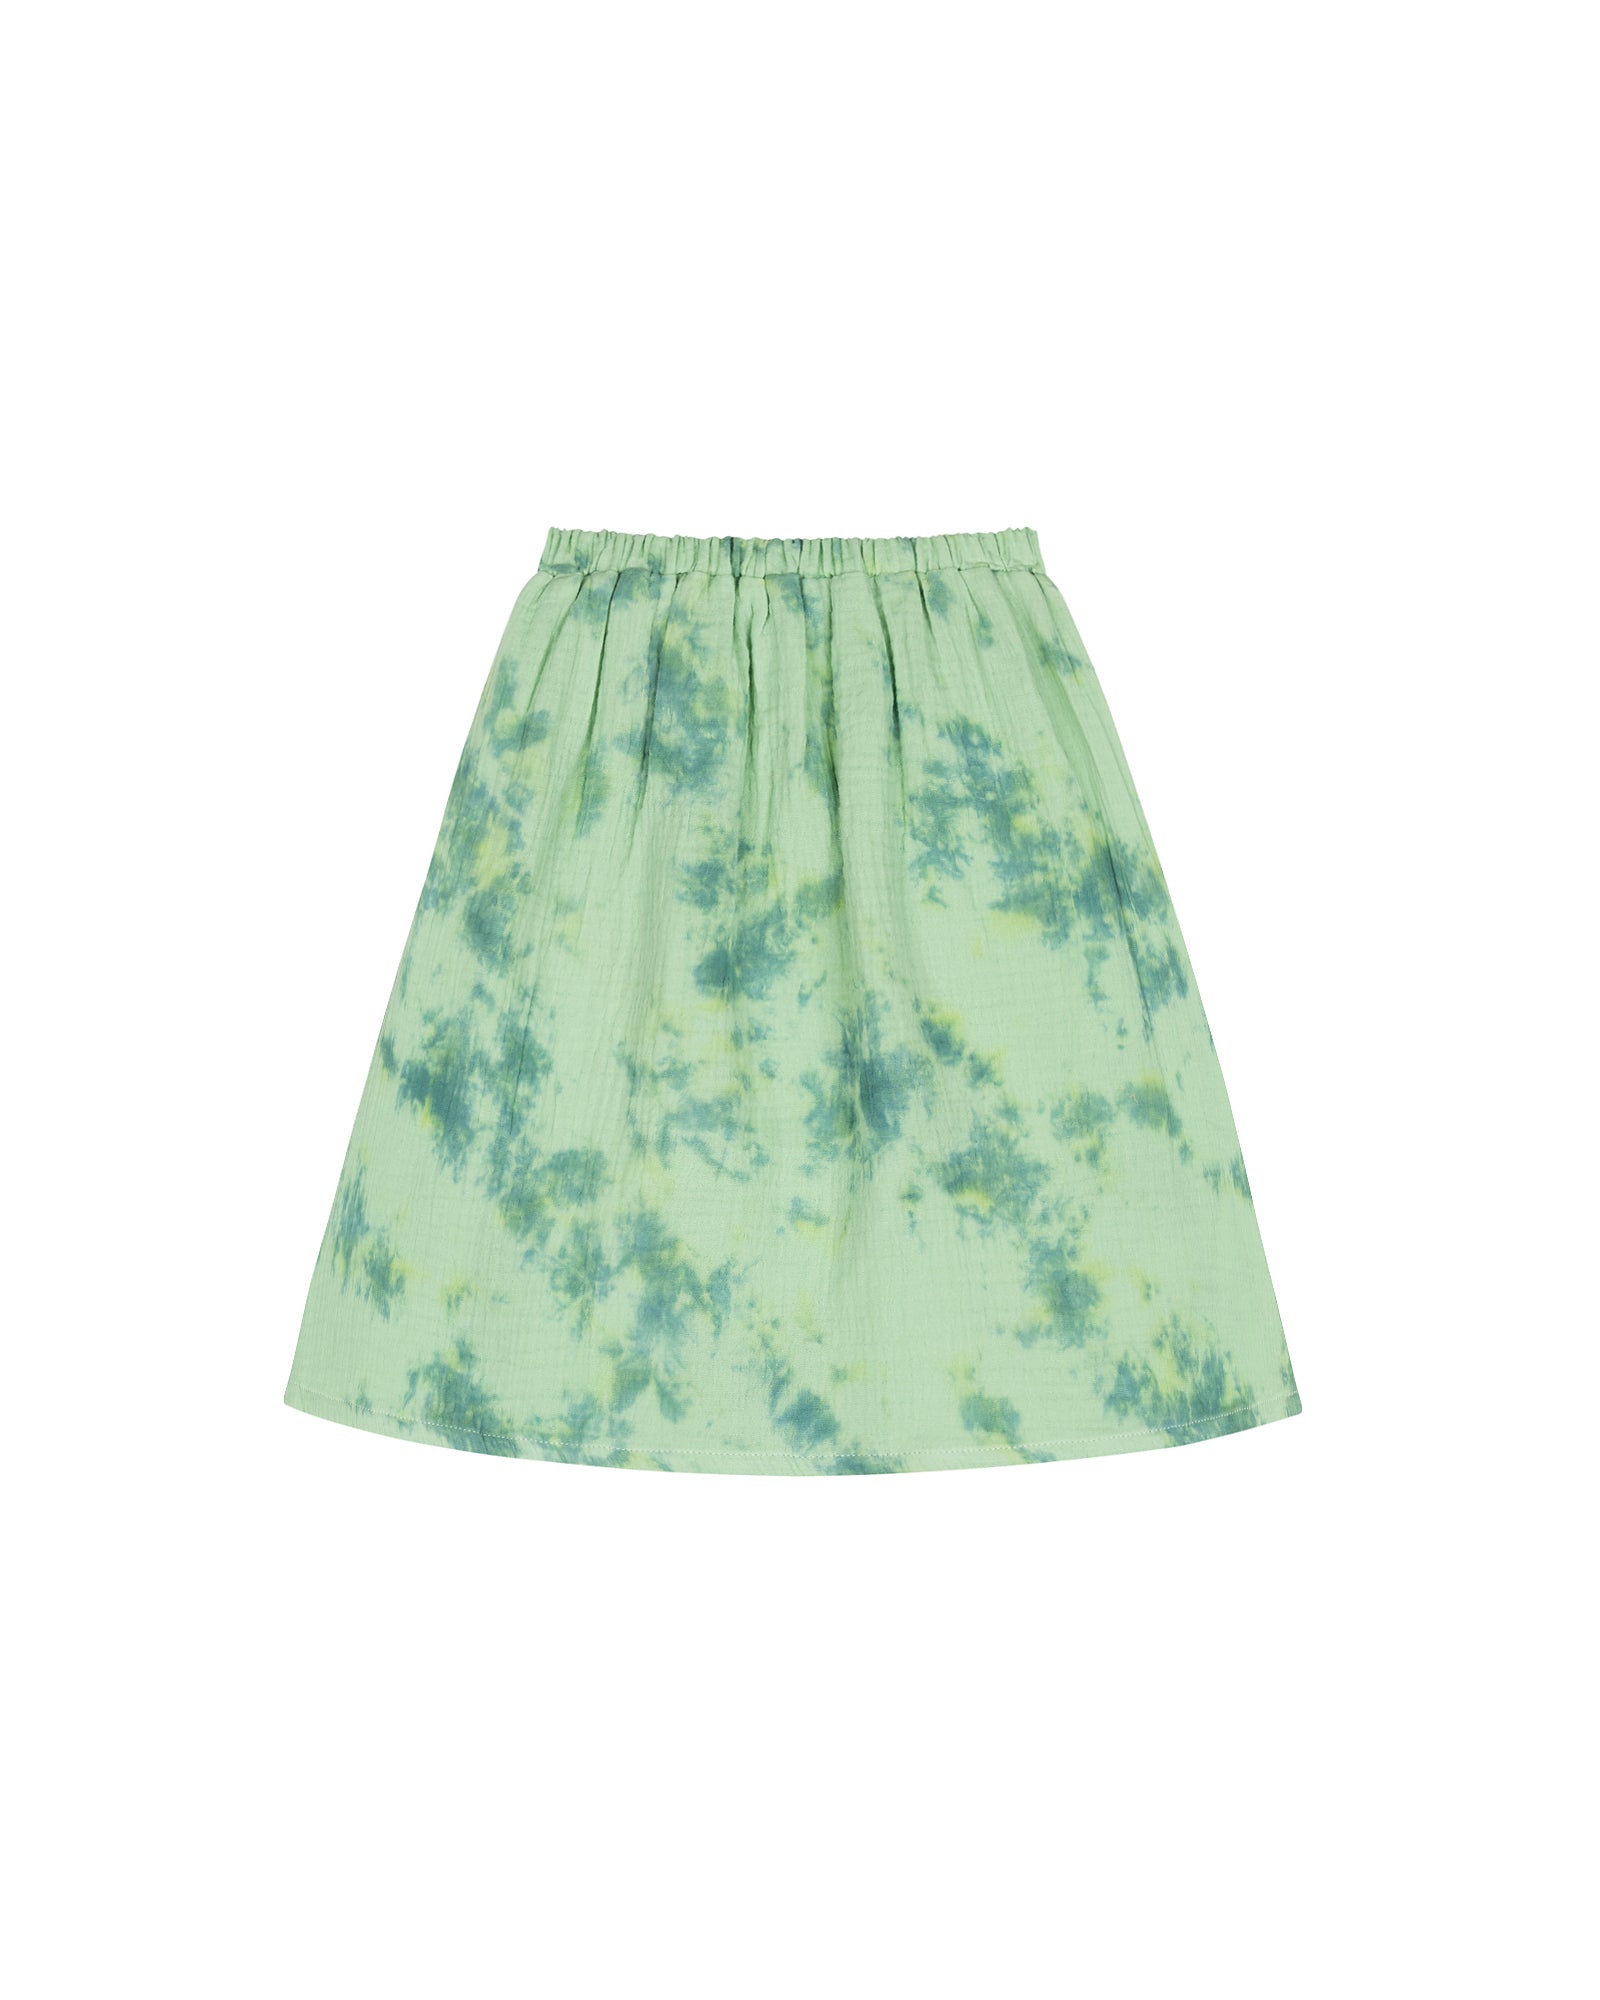 Relaxed Skirt - Green Tye Die